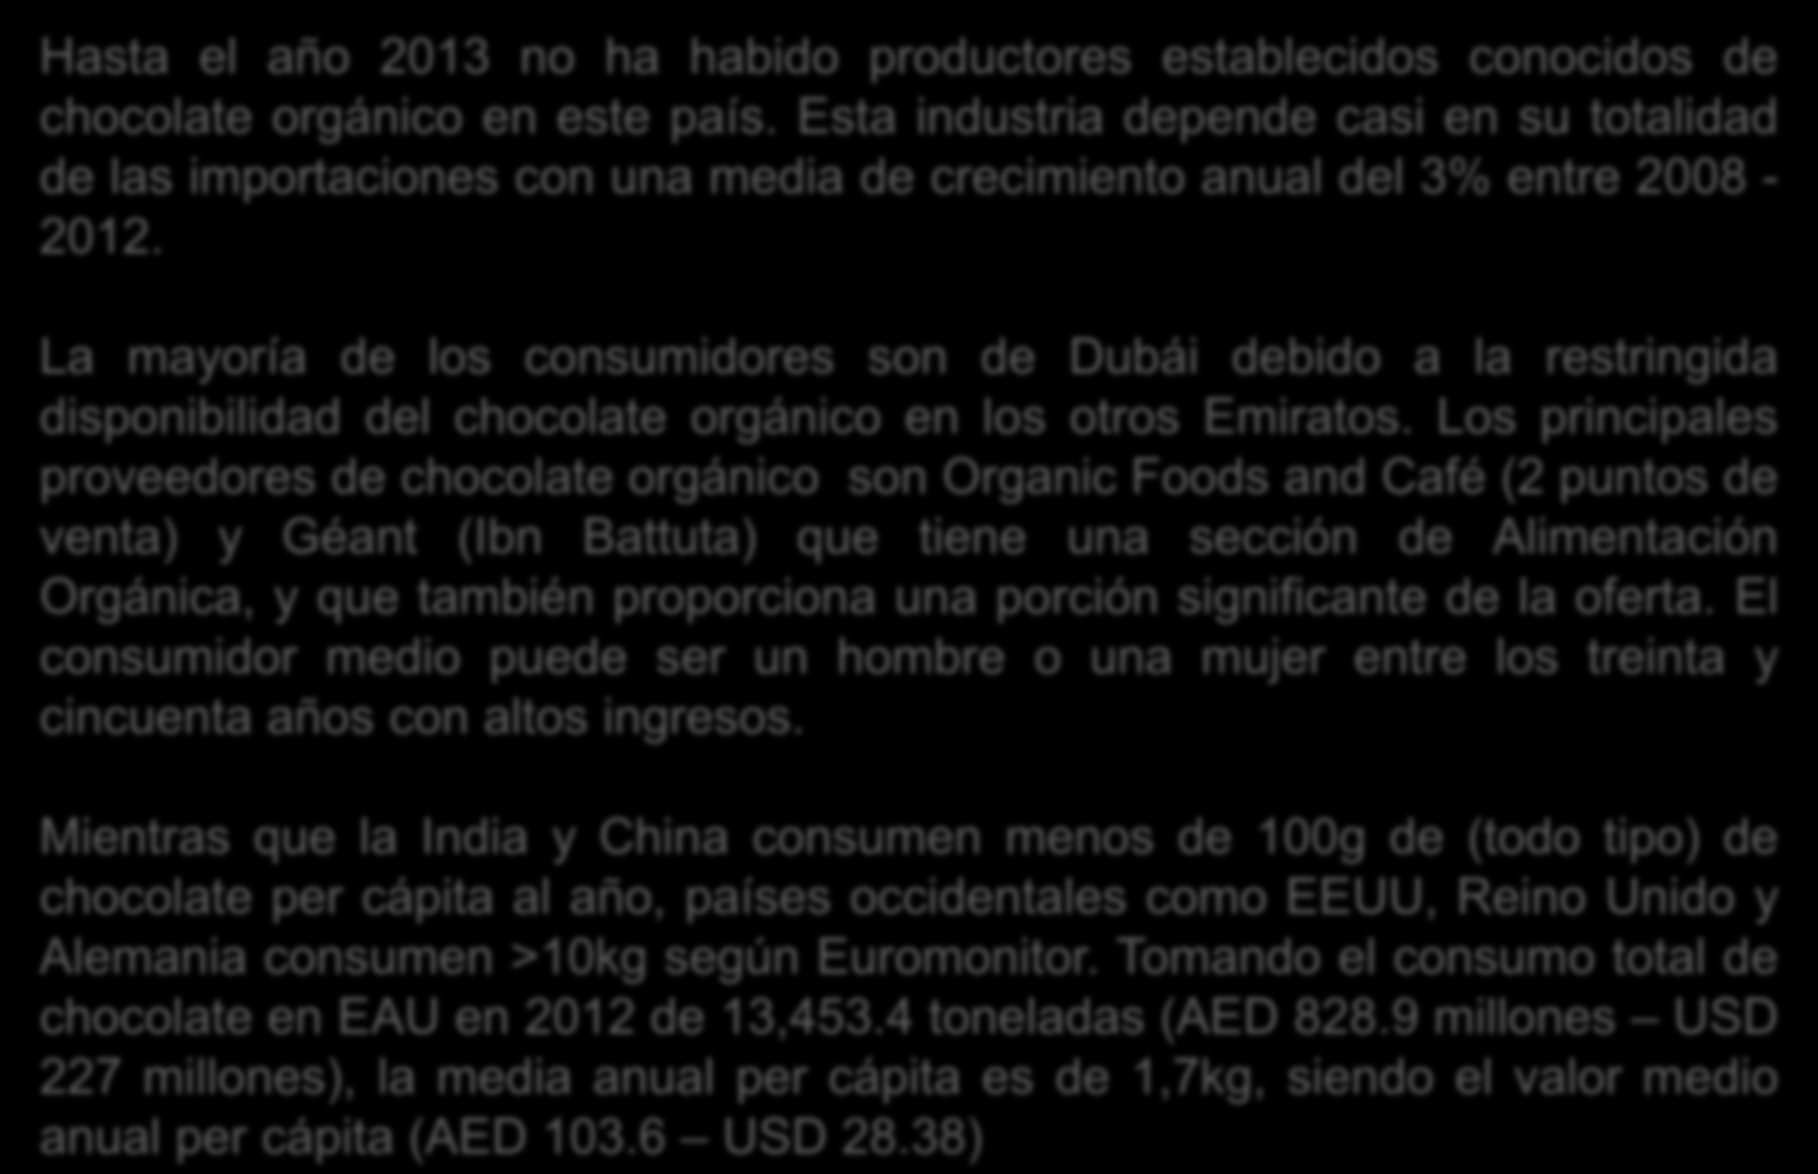 Hasta el año 2013 no ha habido productores establecidos conocidos de chocolate orgánico en este país.